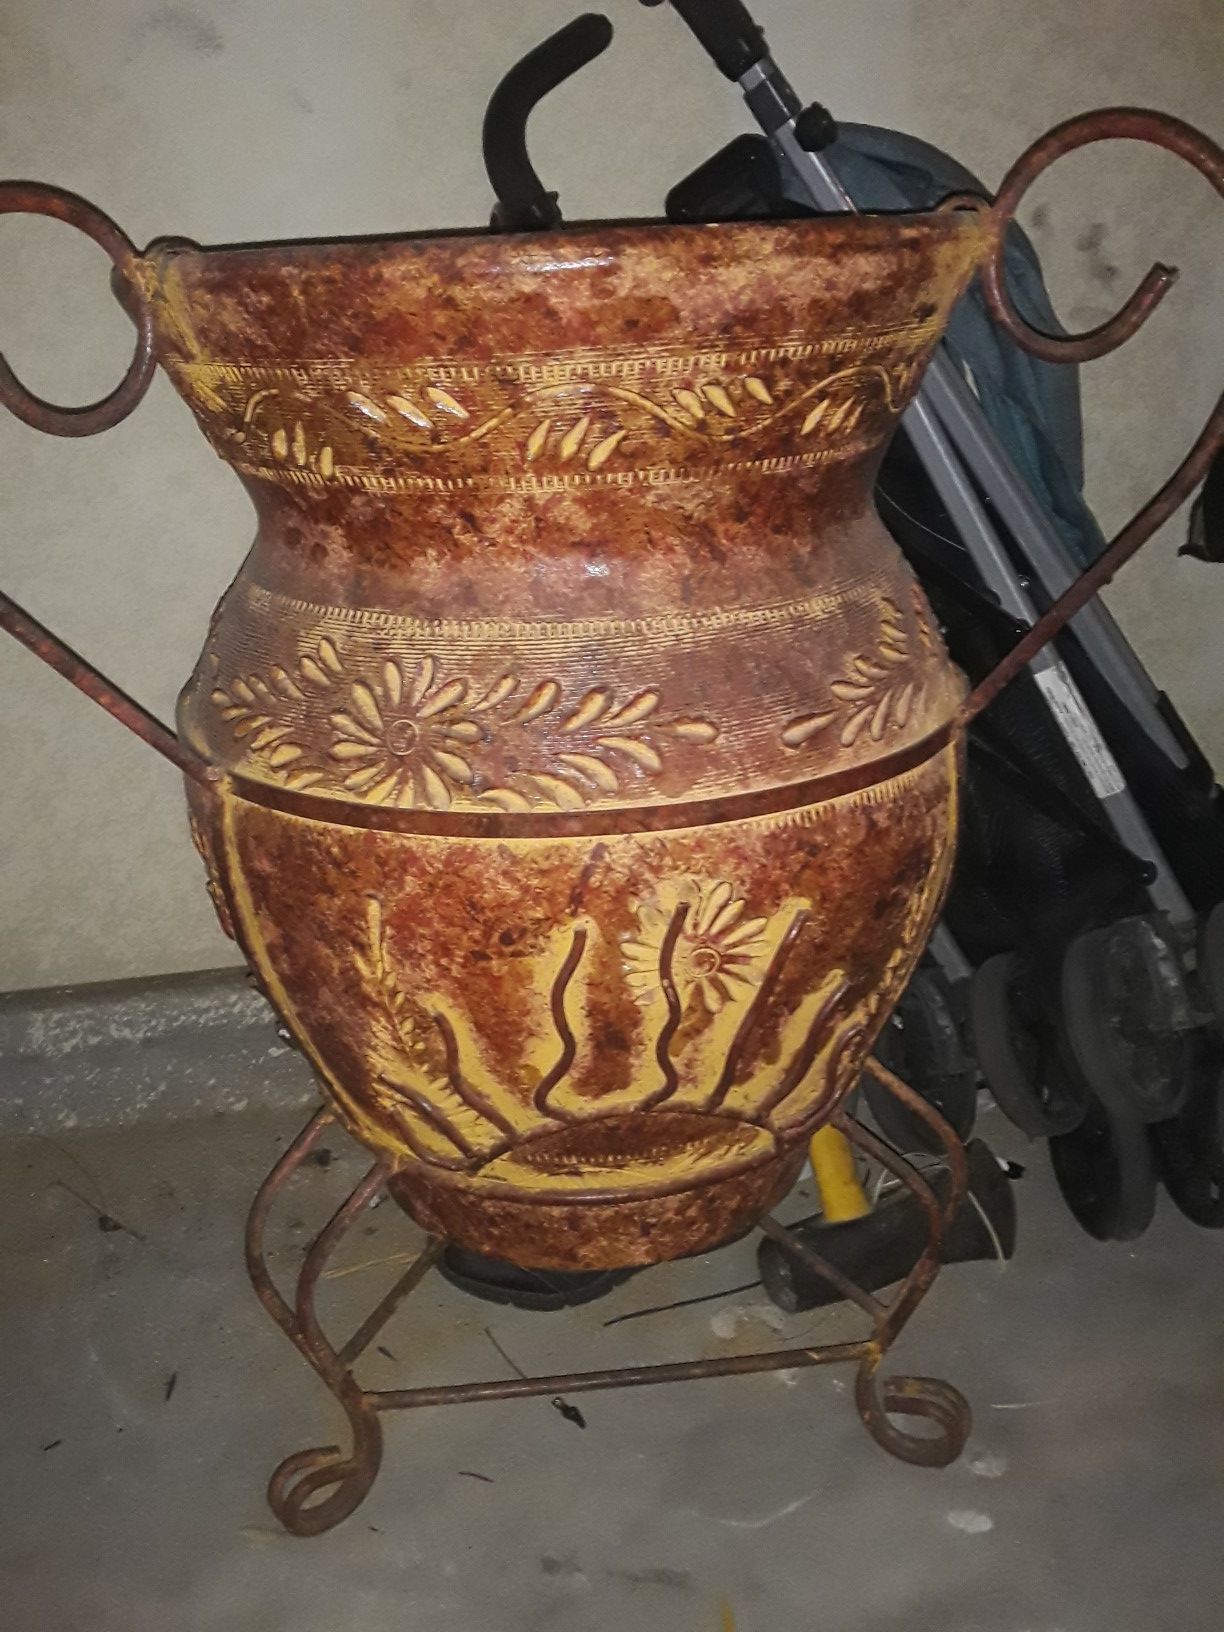 Metal flower pot 2.5 ft tall